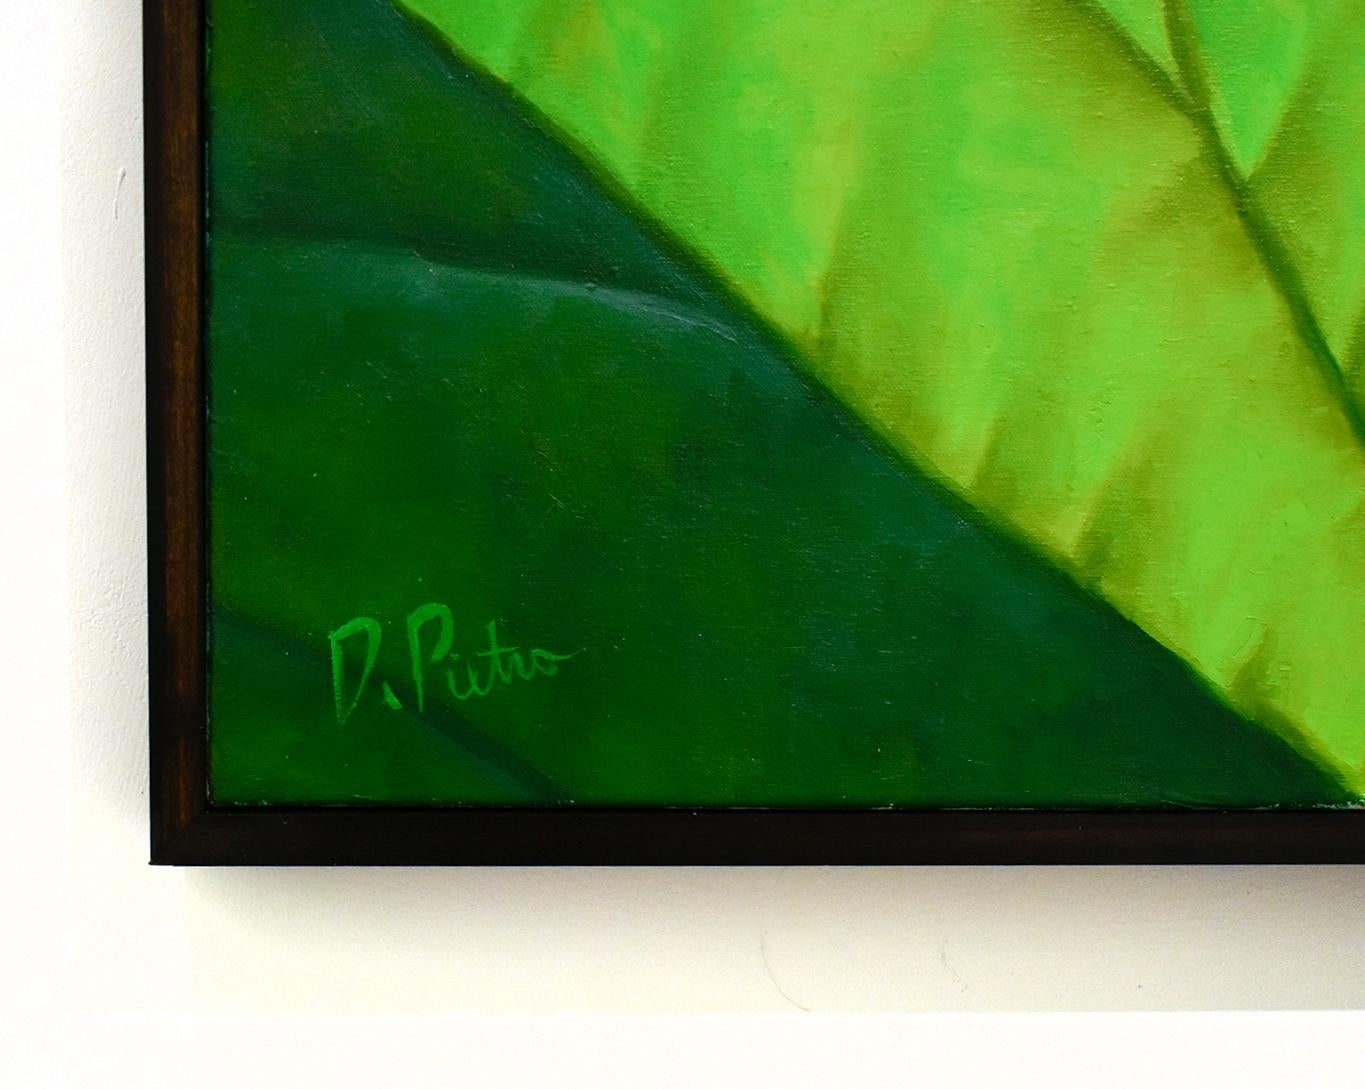 Lotus 25: Fotorealistisches Stillleben mit rosa Blume und grünen Blättern auf blauem Grund (Grau), Still-Life Painting, von Frank DePietro